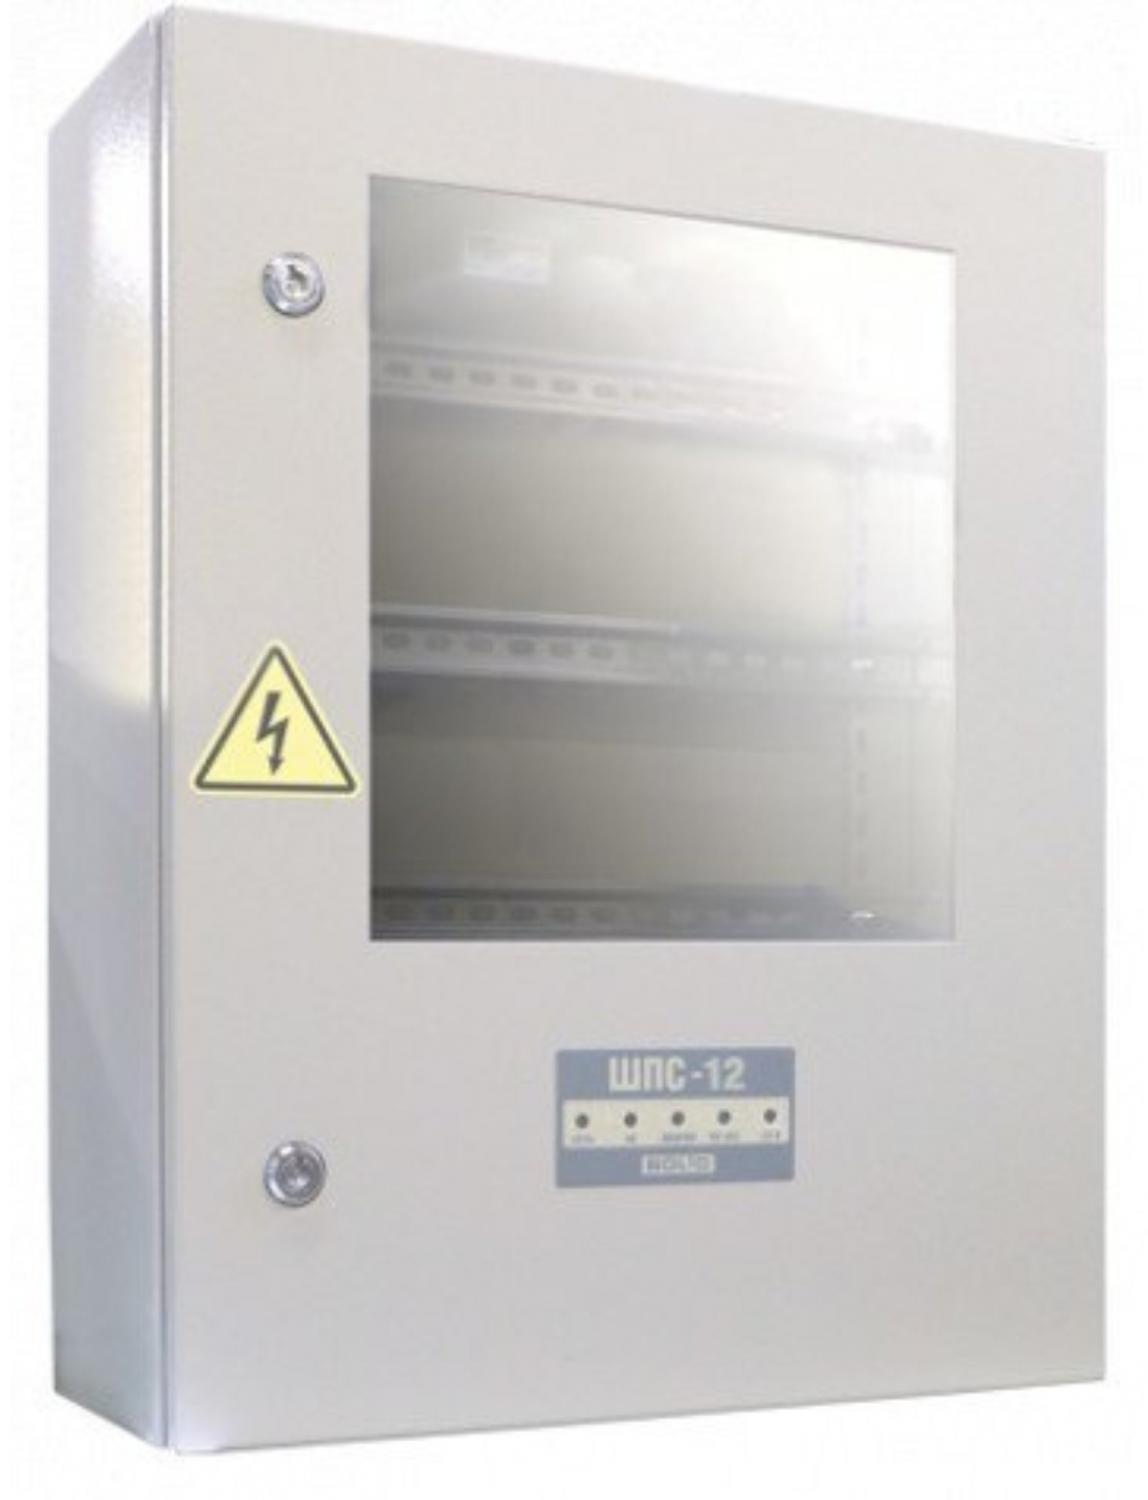 Все Болид ШПС-12 исп. 01 Шкаф для установки приборов системы "Орион" на DIN рейки  видеонаблюдения в магазине Vidos Group